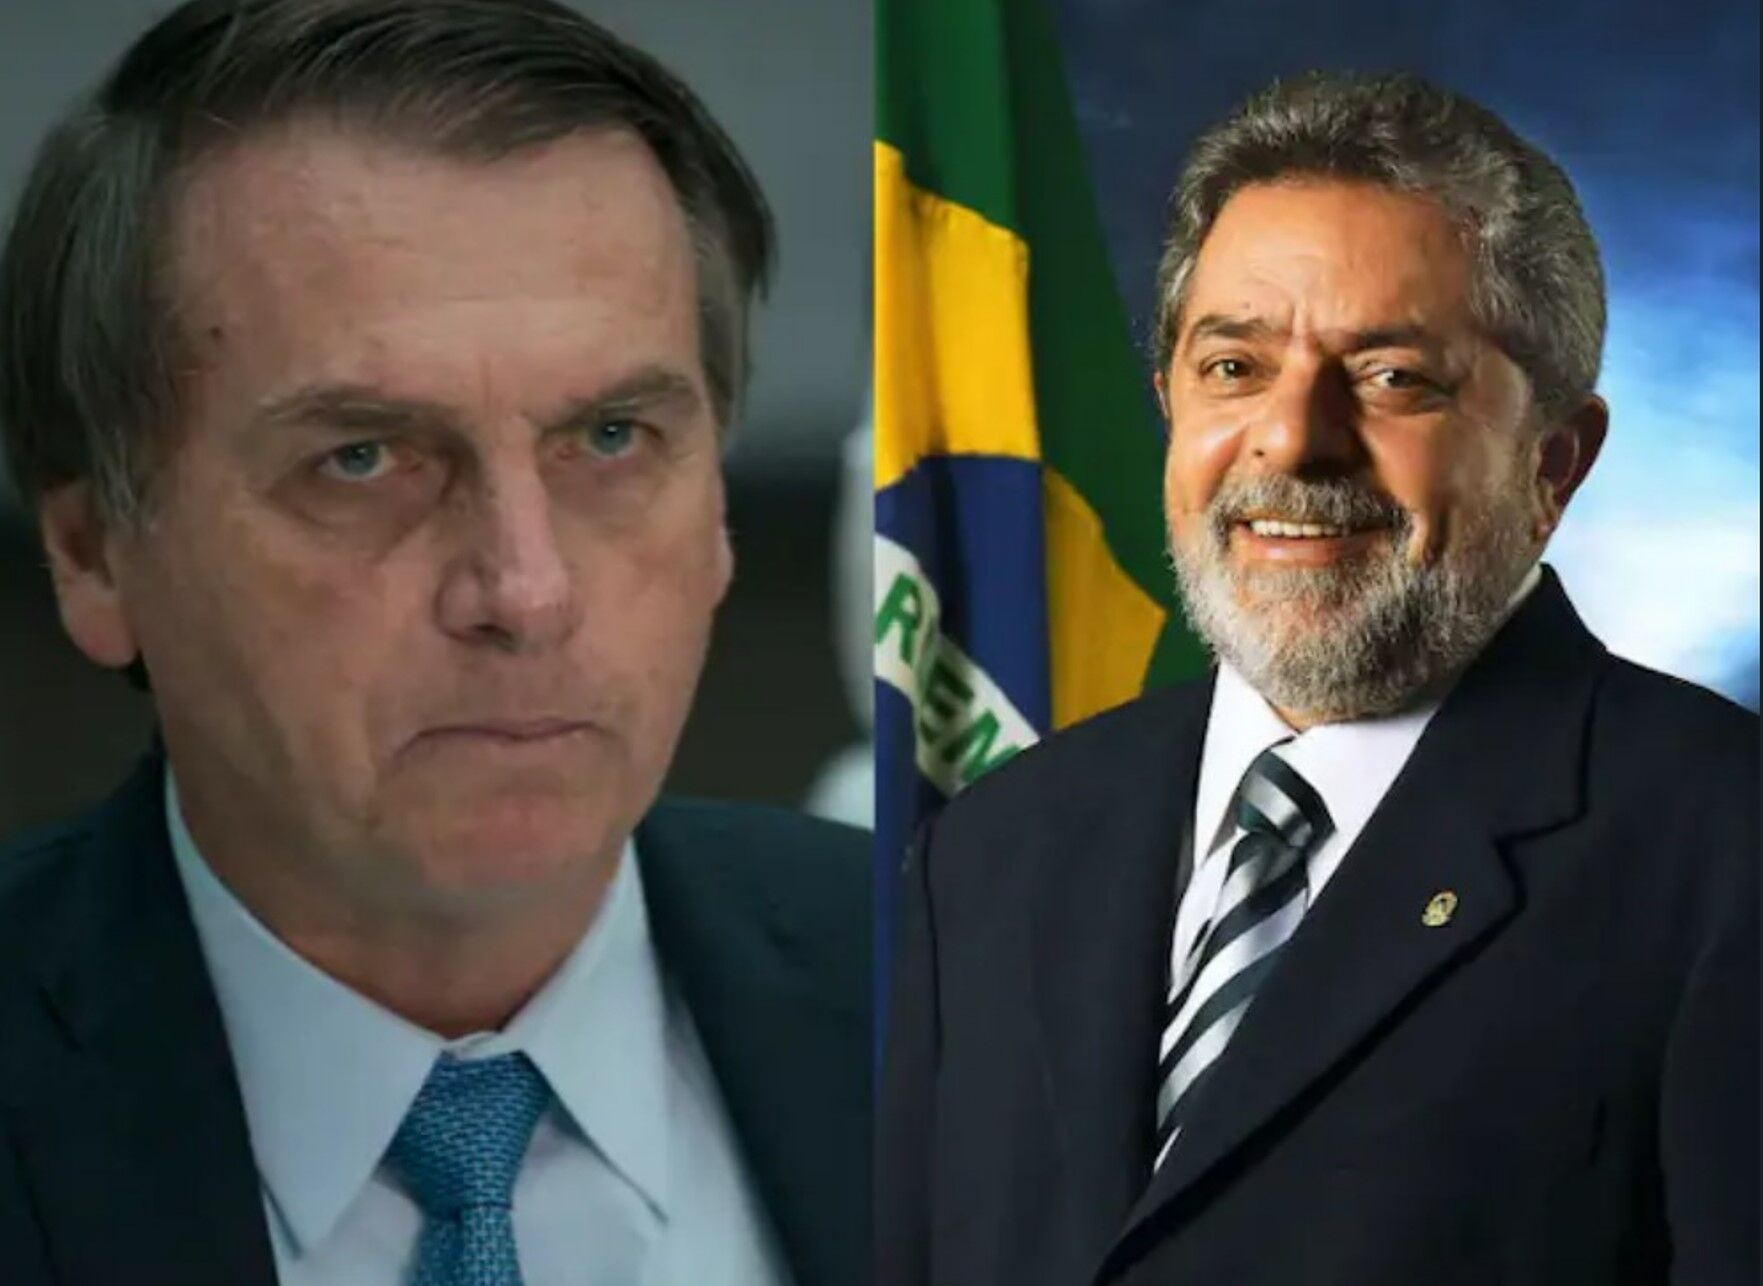 Jair Bolsonaro News: खुद को हनुमान भक्‍त और मोदी जी को दोस्त बताने वाले ब्राजील के राष्‍ट्रपति जैर बोलसोनारो चुनाव हारे, ये बने राष्‍ट्रपति